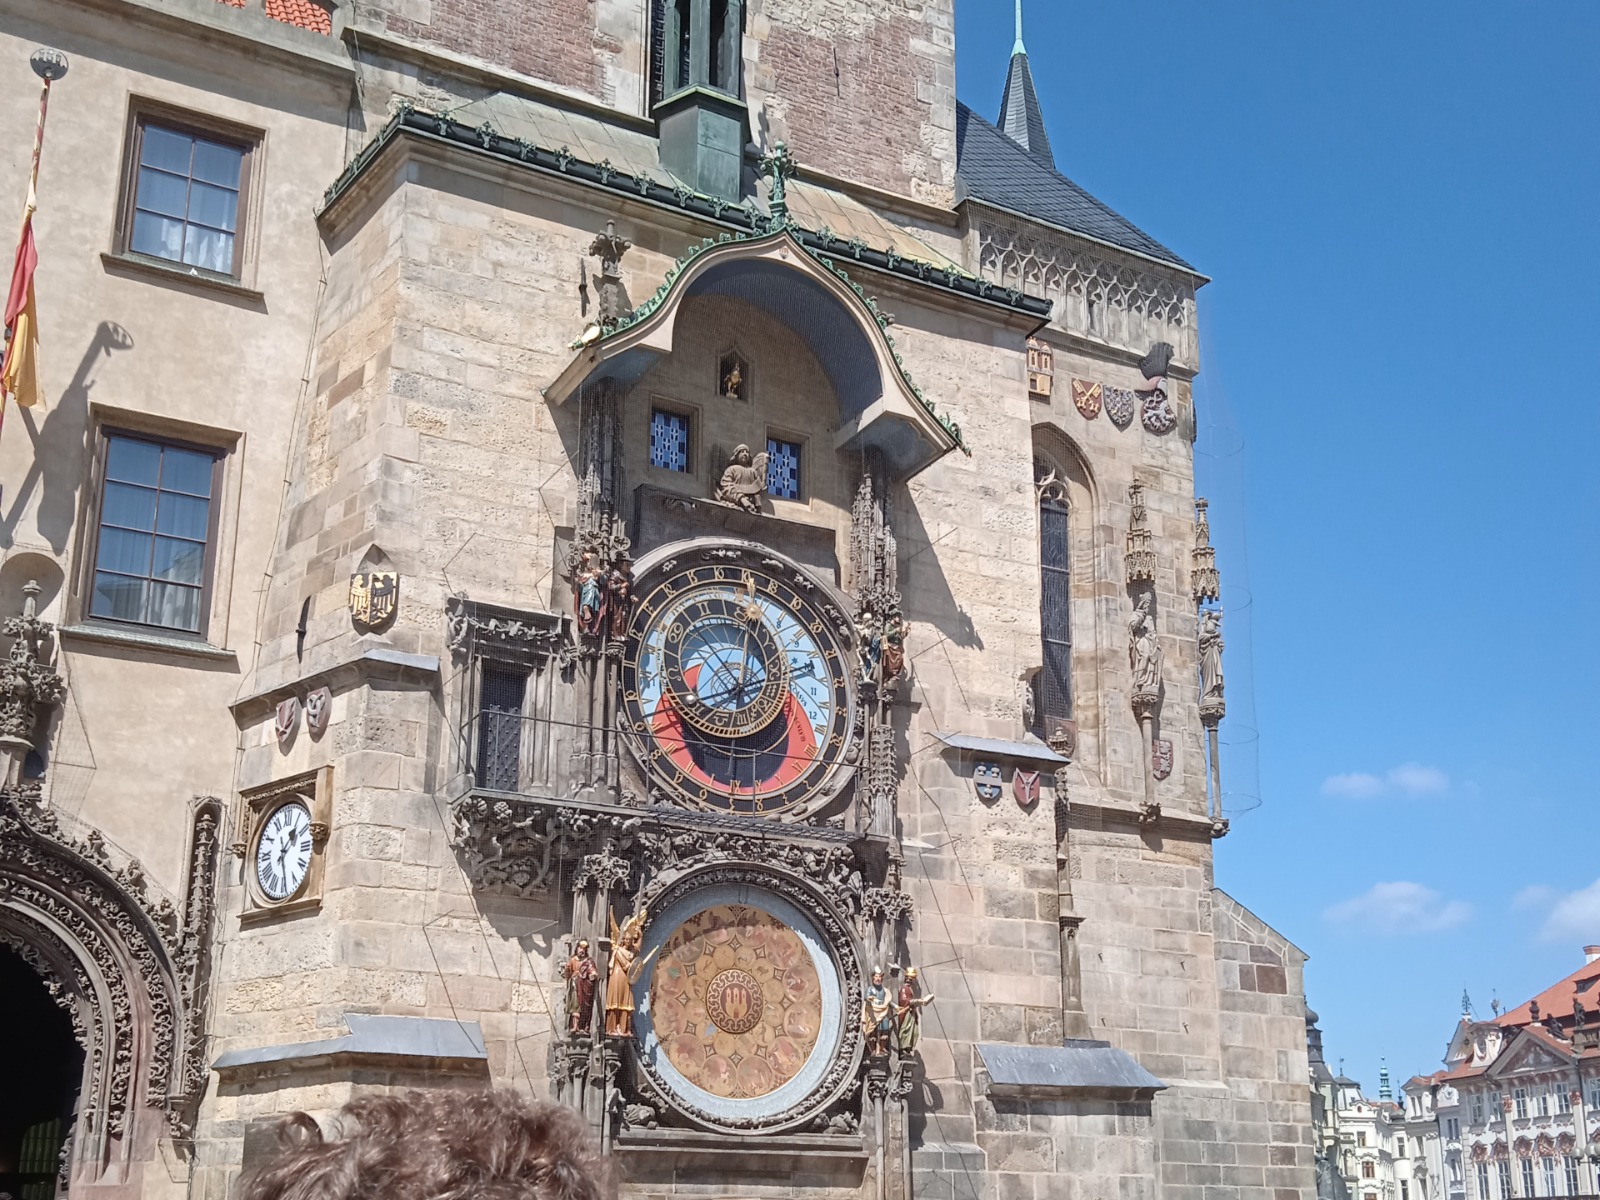 Часы "Орлой" на Староместской площади  